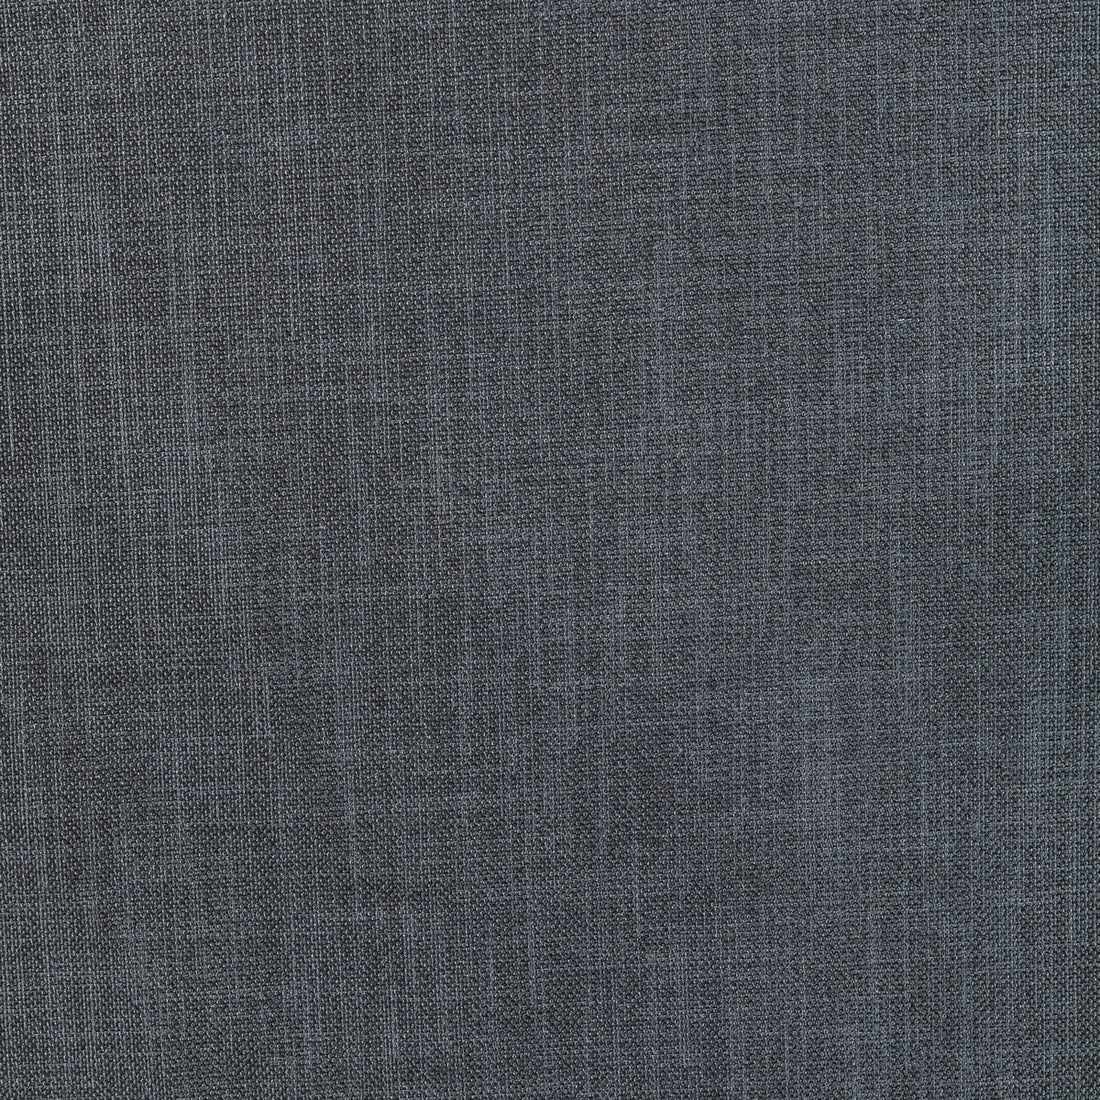 Kravet Basics fabric in 33120-52 color - pattern 33120.52.0 - by Kravet Basics